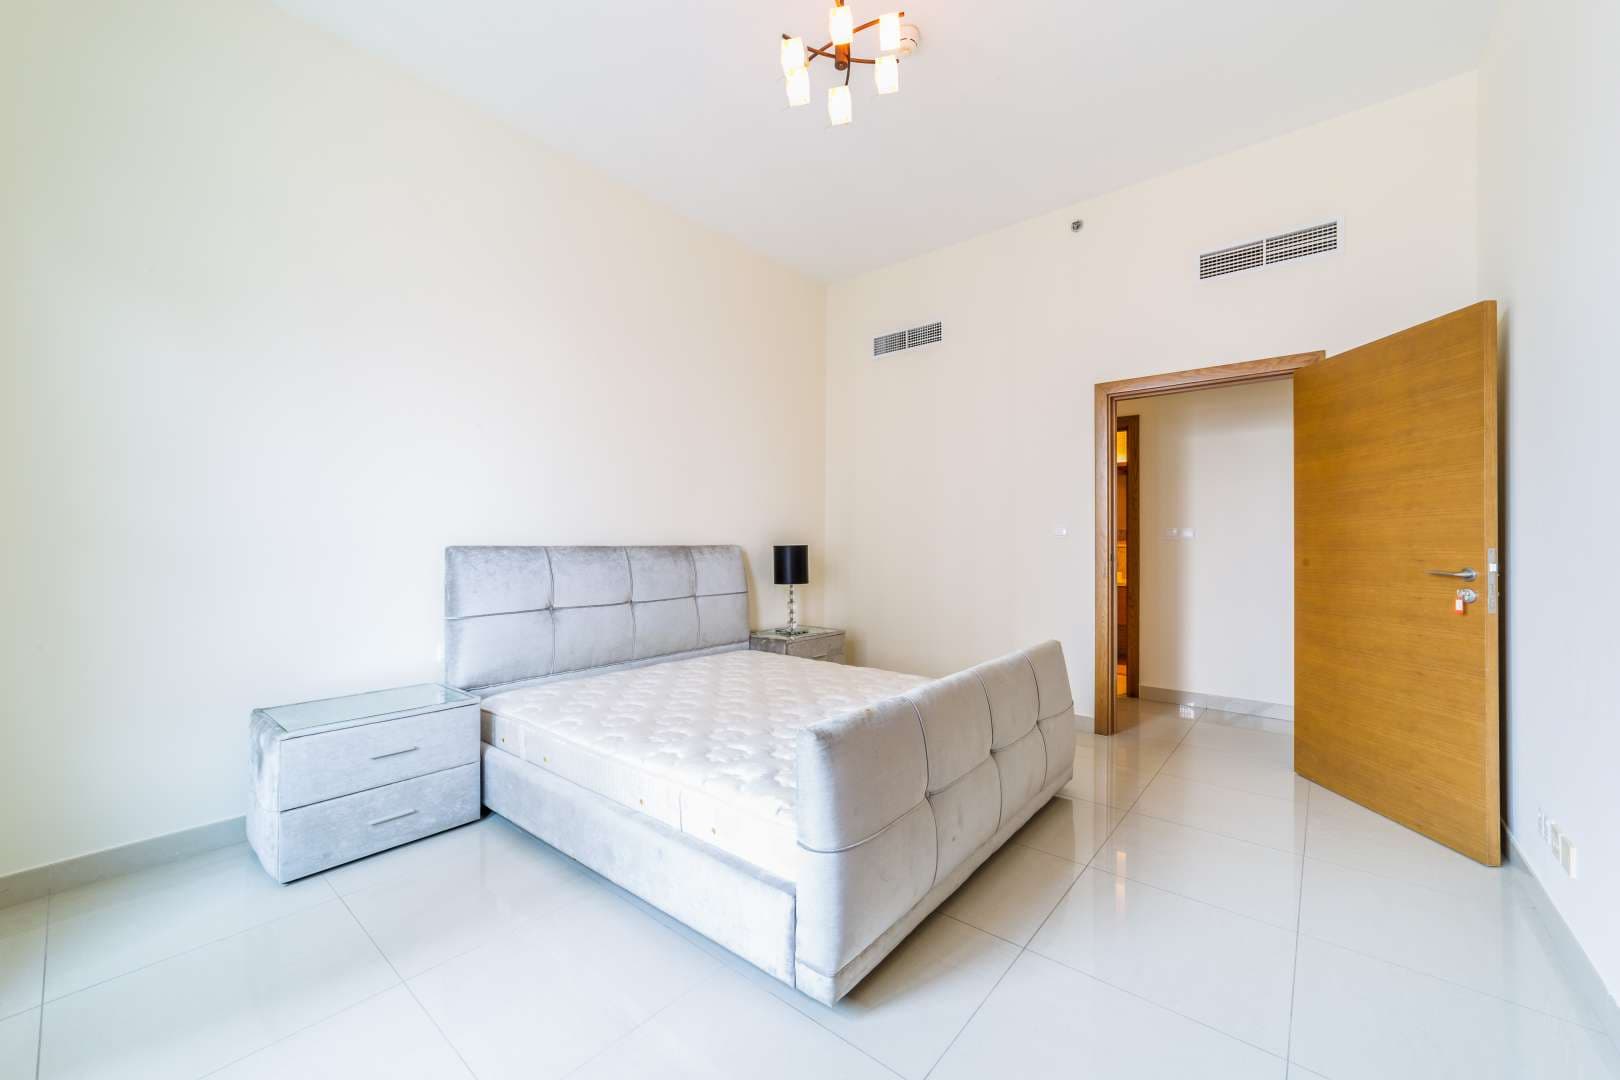 1 Bedroom Apartment For Rent Claren Tower Lp05109 6056eee765b0c80.jpg